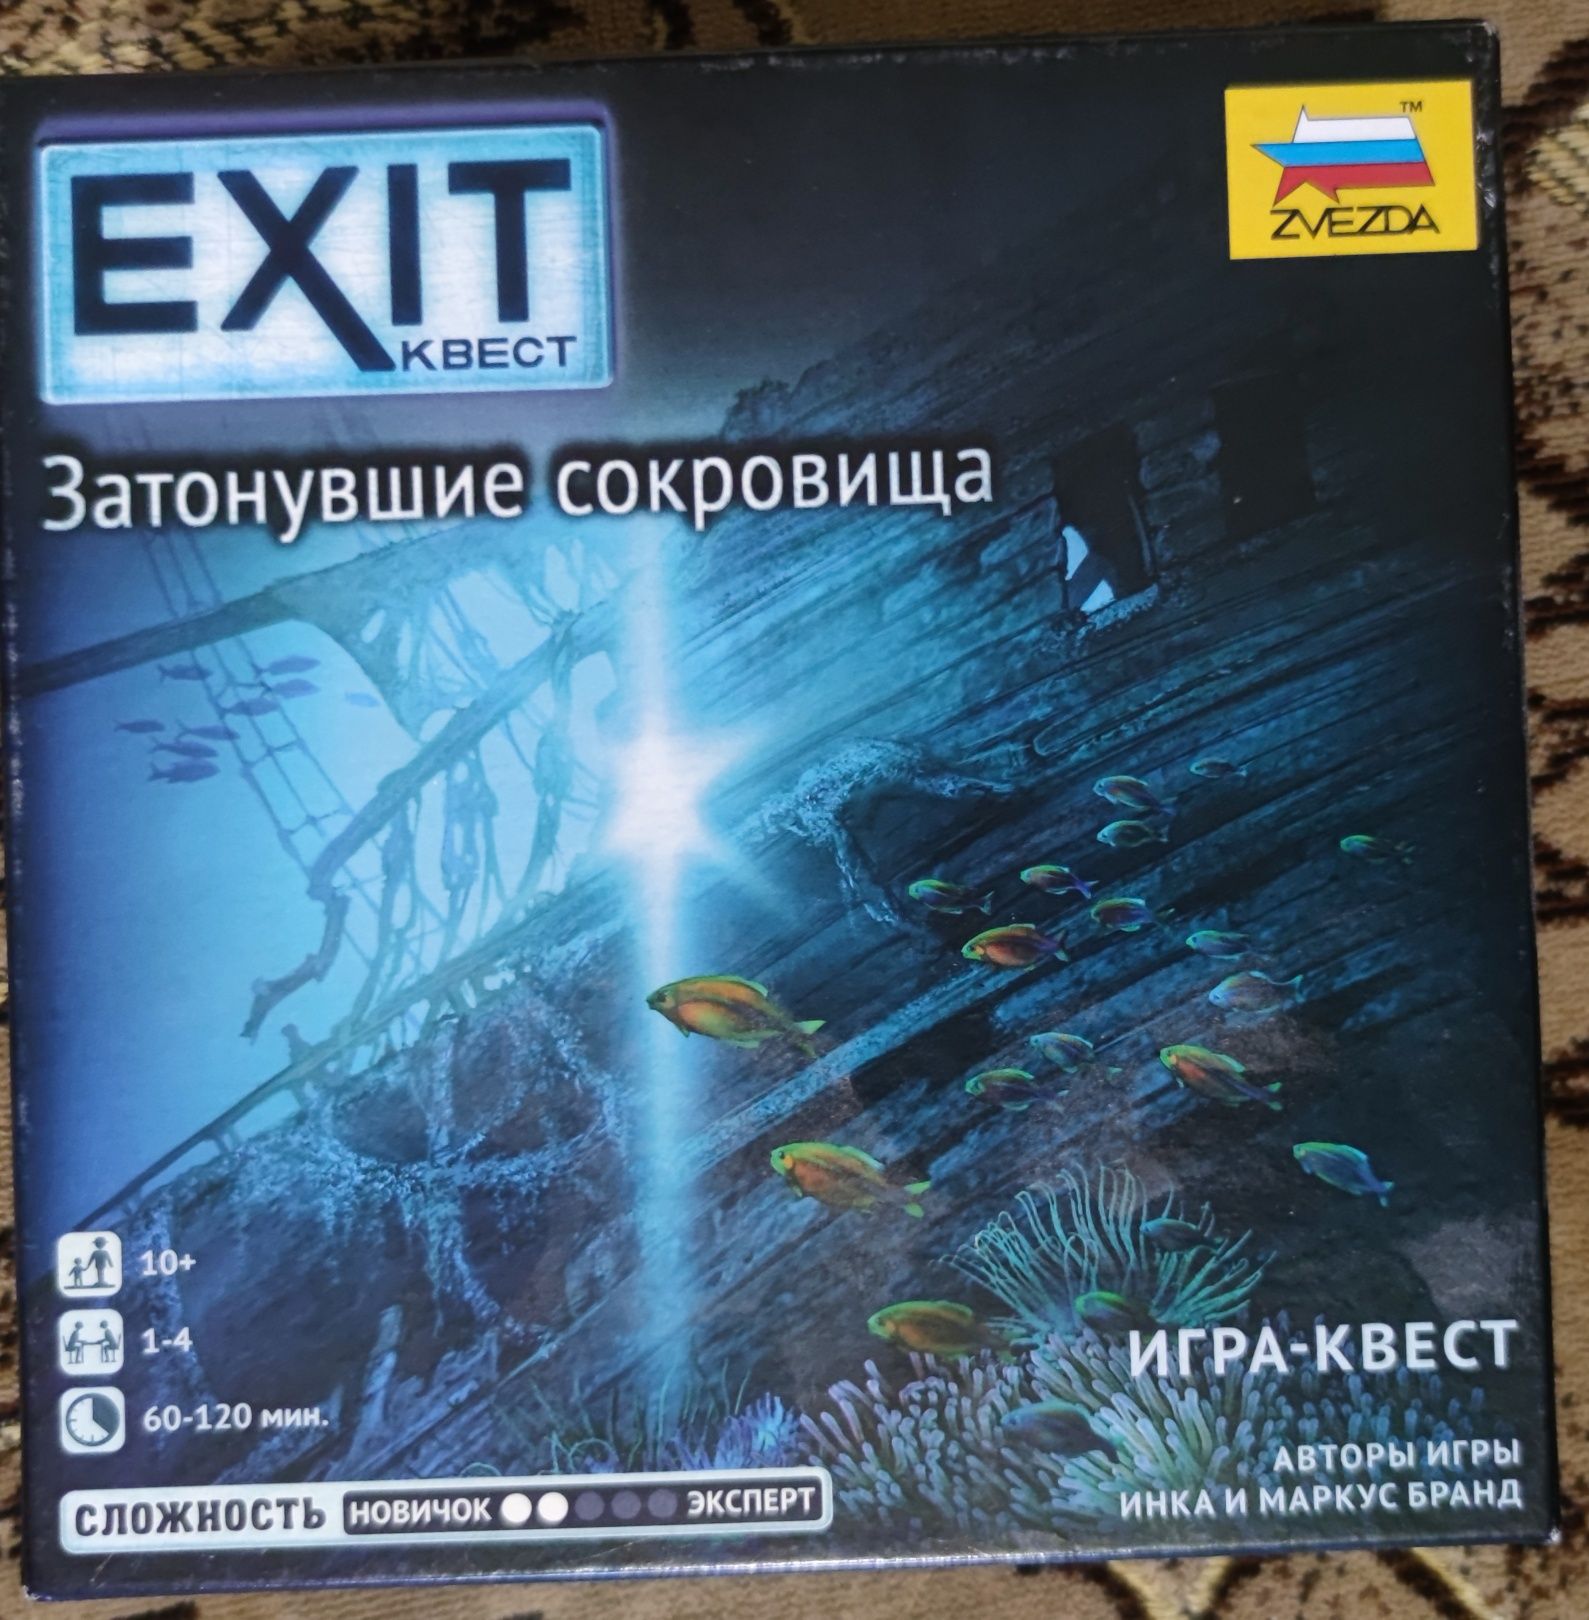 Затонувшие сокровища exit Игра квест